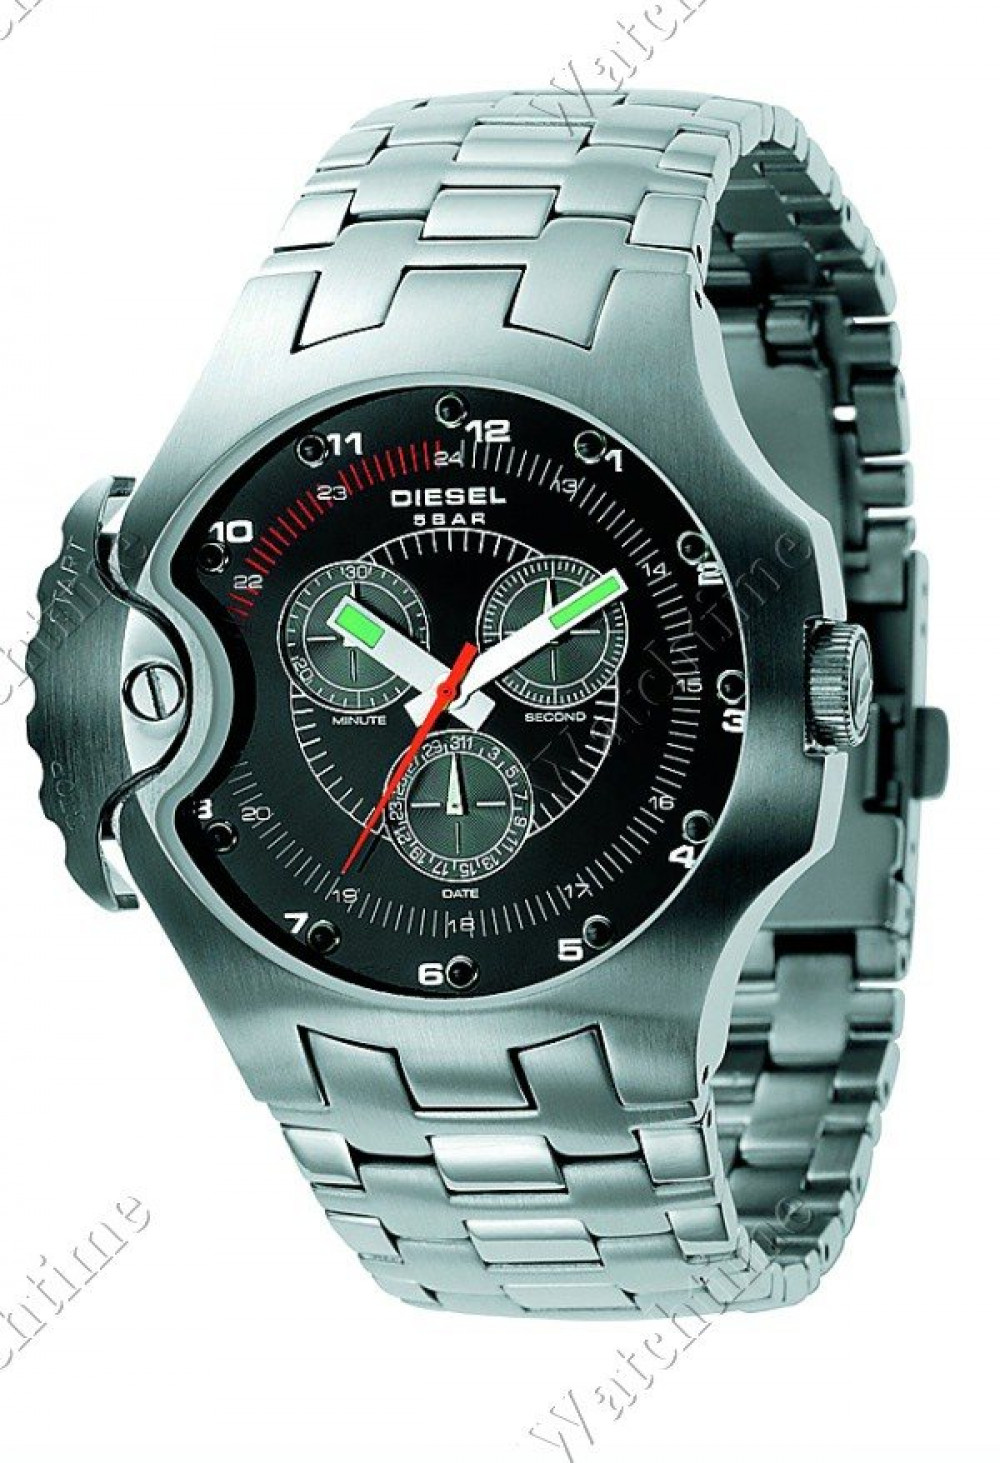 Zegarek firmy Diesel Time Frames, model DZ4130